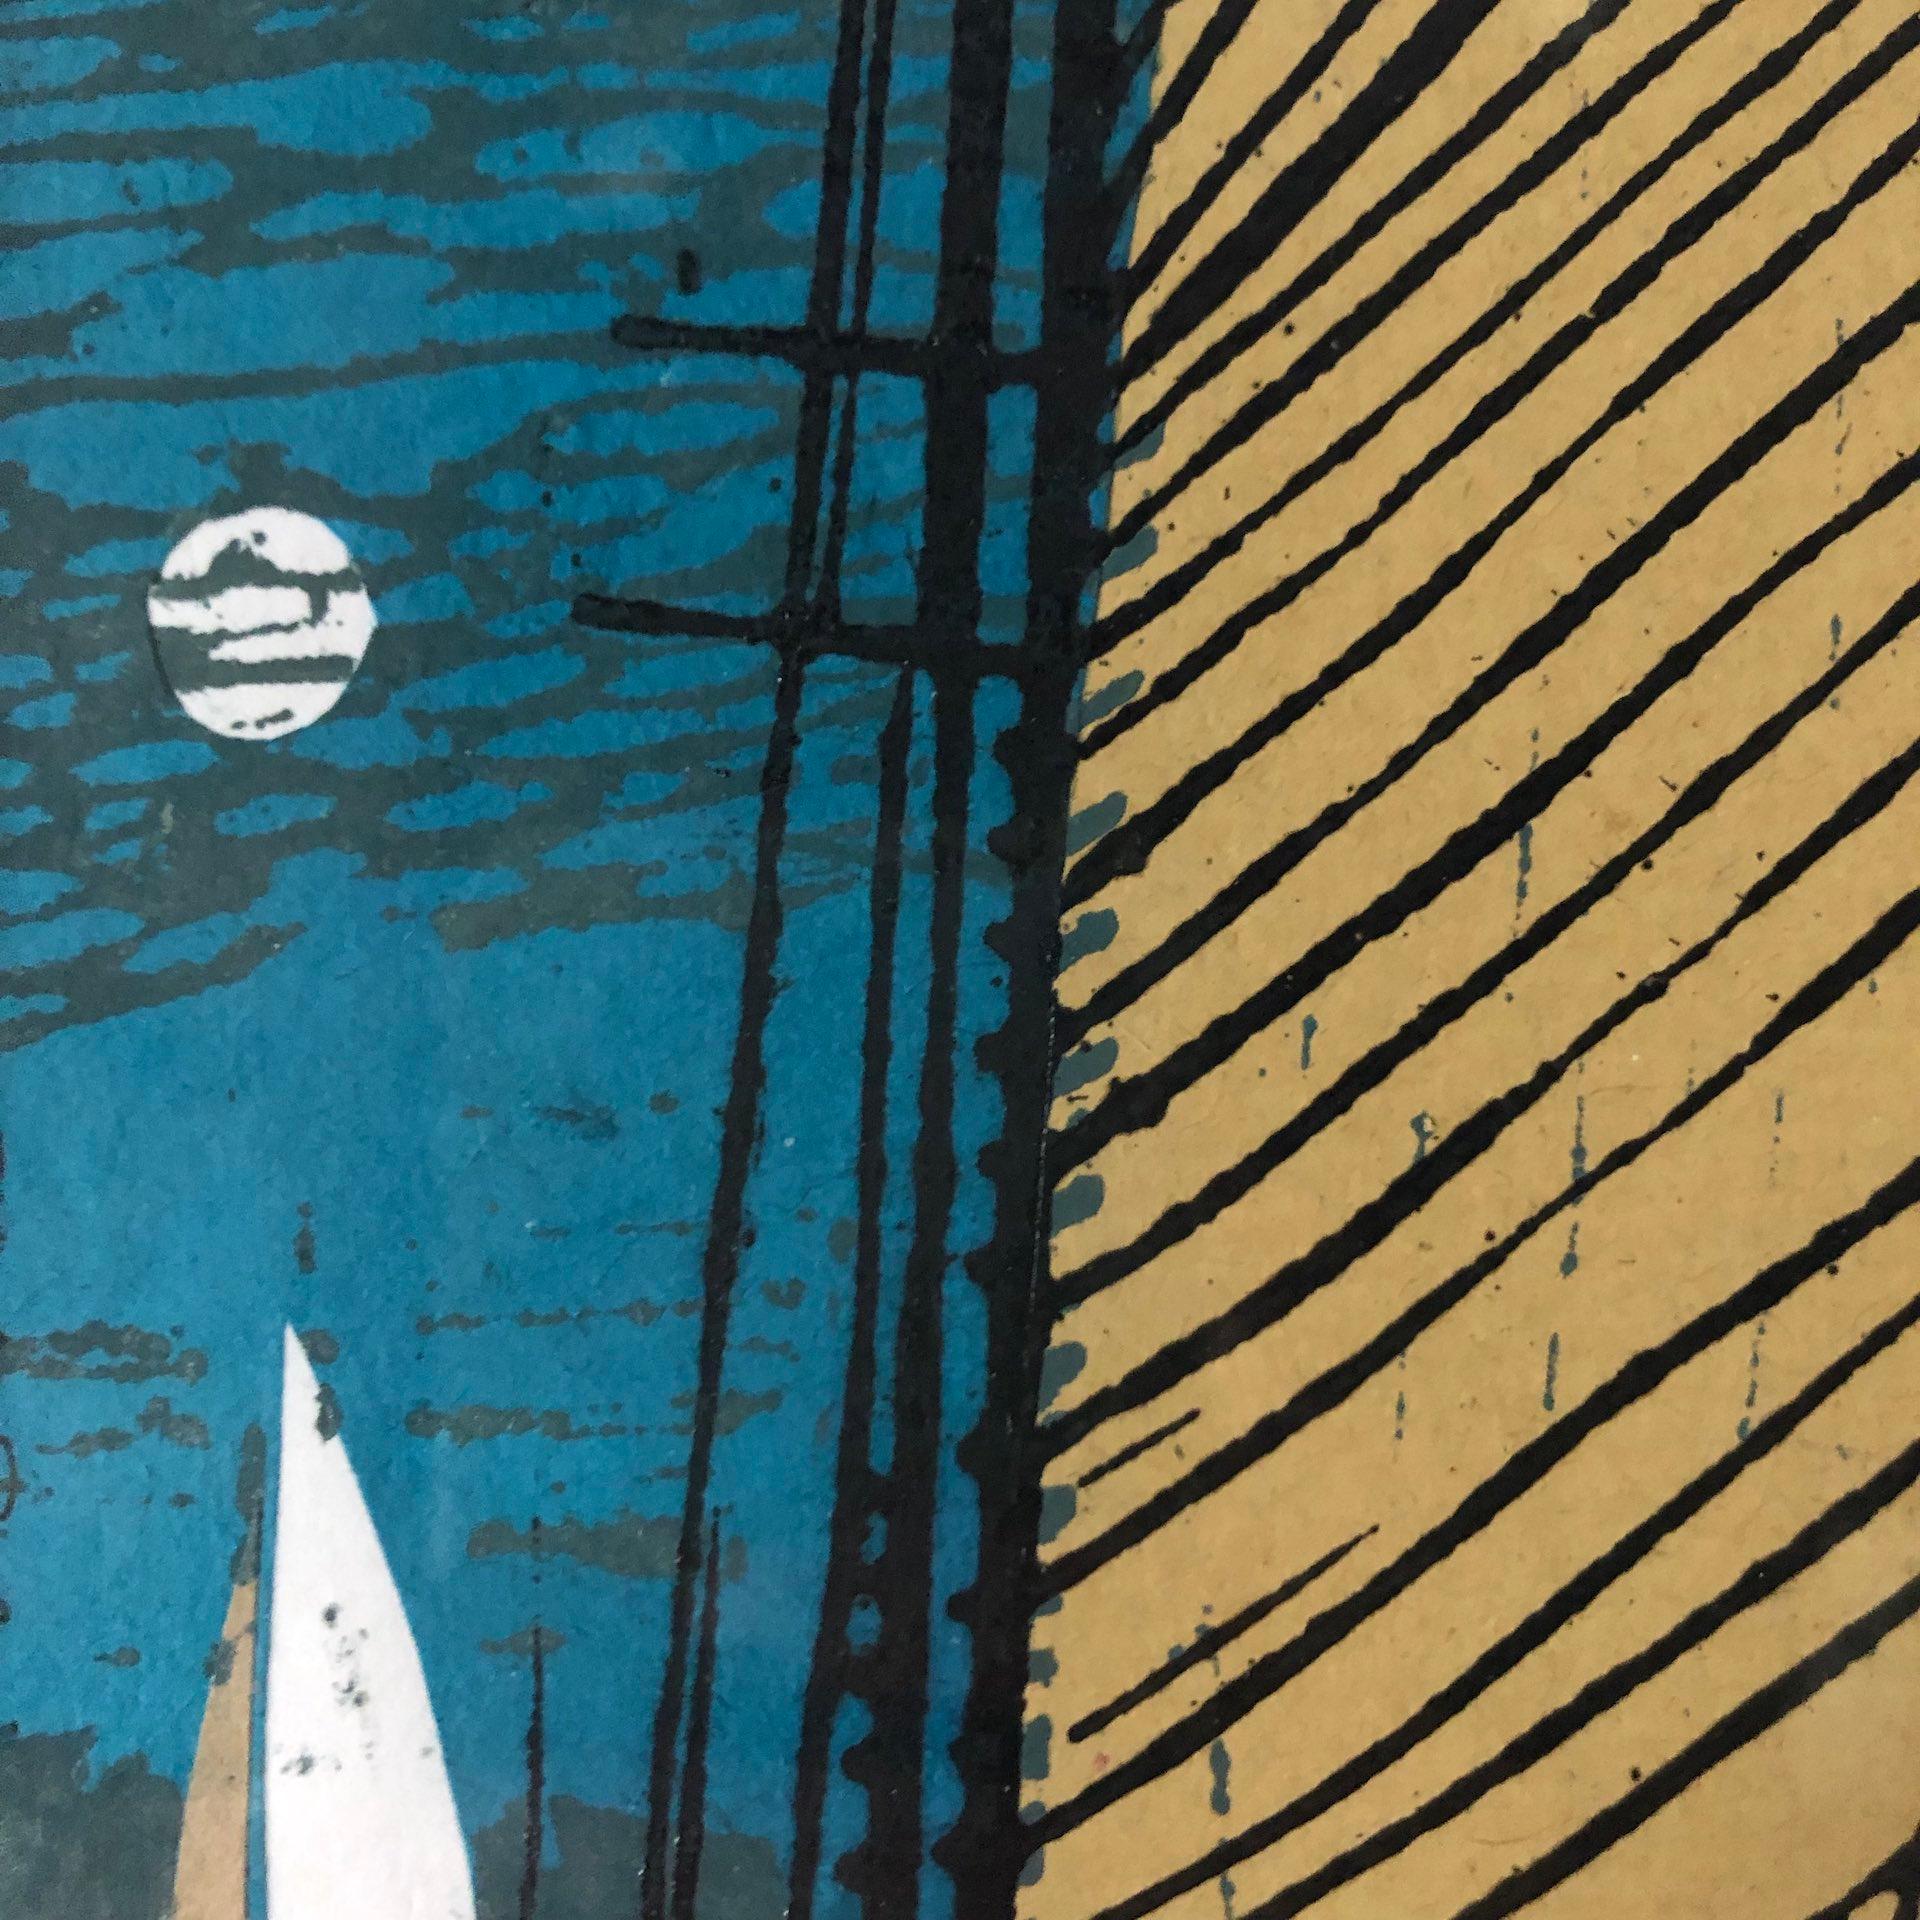  John Scott Martin
Mariette Sails By Moonlight
Unique Linocut Prints
Linocut on Collage
Image Size: H 20cm x W 20cm x D 0.3cm
Mounted Size: H 34.5cm x W 34cm x D 0.3cm
Sold Unframed

 

Mariette Sails By Moonlight is a unique linocut print on